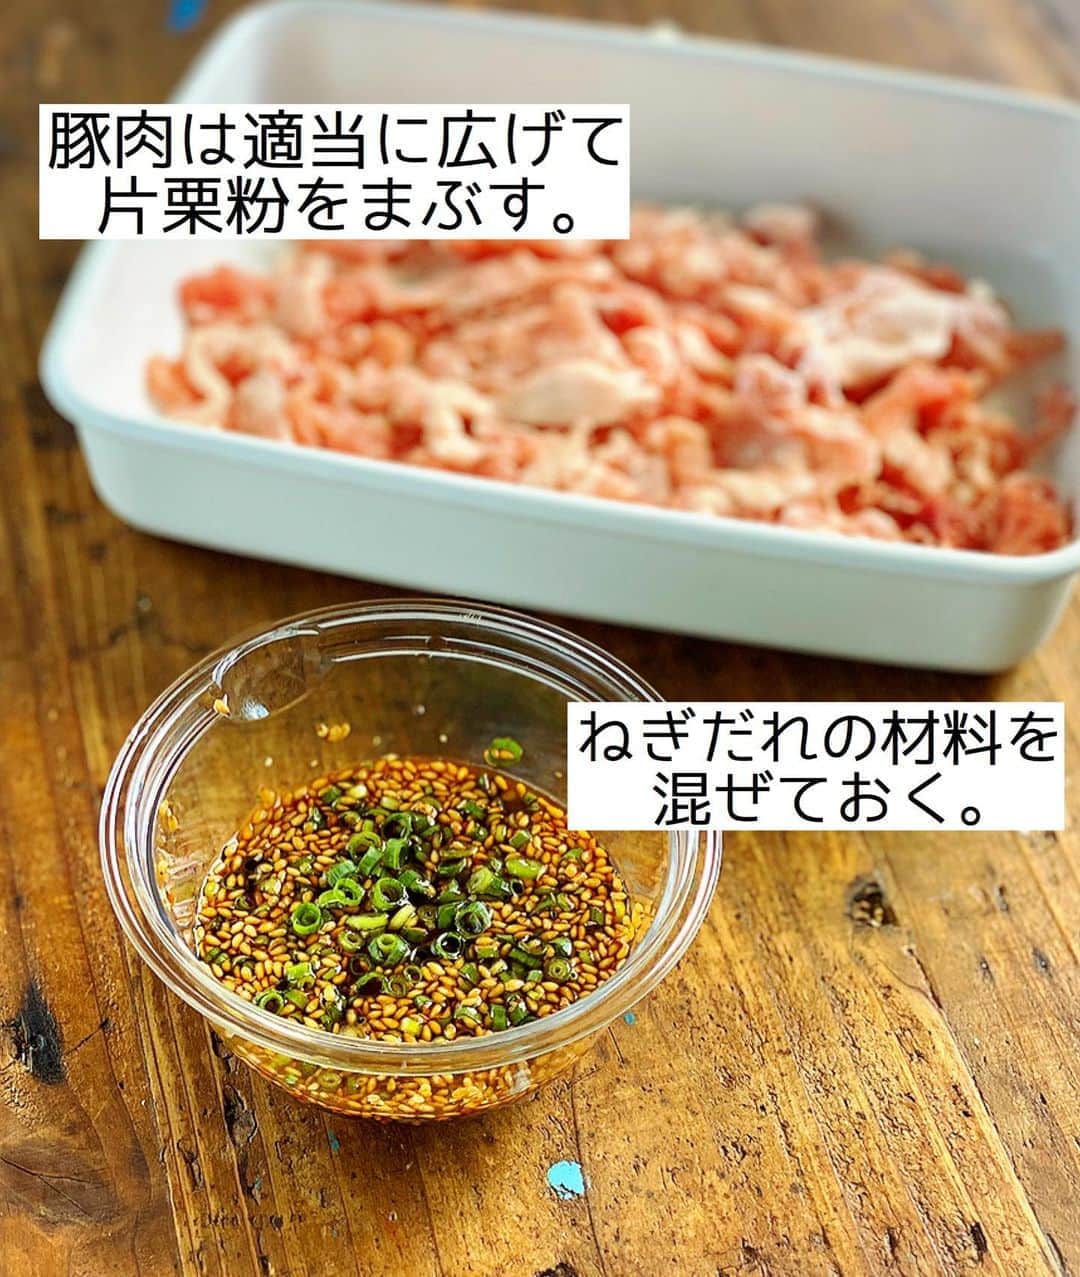 Mizuki【料理ブロガー・簡単レシピ】さんのインスタグラム写真 - (Mizuki【料理ブロガー・簡単レシピ】Instagram)「・﻿ 【レシピ】ーーーーーーーーーーーーー﻿ ♡ジュワ〜っと！ねぎだれ豚もやし♡﻿ ーーーーーーーーーーーーーーーーーー﻿ ﻿ ﻿ ﻿ おはようございます(*^^*)﻿ ﻿ 今日はがっつり節約おかず！﻿ ［ねぎだれ豚もやし］のご紹介です♡﻿ 使用するのは豚こま×もやしで﻿ コスパ抜群ですよ〜(*´艸`)﻿ ﻿ もやしはさっと炒めてシャキシャキに♩﻿ 豚肉はカリカリに焼いて﻿ ねぎだれをジュワっとかけたらもう最高♡﻿ ﻿ あっという間にできるので﻿ よかったらお試し下さいね(*^^*)﻿ ﻿ ﻿ ﻿ ーーーーーーーーーーーーーーーーーーーー﻿ 【2人分】﻿ 豚こま切れ肉...170g﻿ 片栗粉...大1﻿ もやし...1袋﻿ ごま油...大1﻿ 塩こしょう...少々﻿ ●万能ねぎ(小口切り)...3本〜﻿ ●醤油・酢...各大1.5﻿ ●砂糖・白ごま...各大1﻿ ﻿ 1.●を合わせてねぎだれを作る。豚肉は適当に広げて片栗粉をまぶす。﻿ 2.フライパンにごま油小1を強火で熱し、もやしを炒めて塩こしょうを振り、器に盛り付けておく。﻿ 3.そのままのフライパンにごま油小2を中火で熱し、豚肉を両面カリッとなるまで焼く。﻿ 4.2に3をのせ、ねぎだれをかける。﻿ ーーーーーーーーーーーーーーーーーーーー﻿ ﻿ ﻿ ﻿ 《ポイント》﻿ ♦︎万能ねぎの量はお好みでOK！代わりに長ねぎ(みじん切り)を使用しても♩﻿ ♦︎豚肉は適当に広げ、手の平でギュッと押さえると平たくなります♩﻿ ﻿ ﻿ ﻿ ﻿ ﻿ ﻿ ﻿ ﻿ ＿＿＿＿＿＿＿＿＿＿＿＿＿＿＿＿＿＿＿﻿ 📕6刷重版しました📕﻿ 簡単・時短！ 毎日のごはんがラクになる﻿ ✨🦋 【 #Mizukiの今どき和食 】🦋✨﻿ ＿＿＿＿＿＿＿＿＿＿＿＿＿＿＿＿＿＿＿﻿ なるべく少ない材料で﻿ 手間も時間も省きながら﻿ 簡単にできるおいしい和食レシピ♩﻿ 簡単に失敗なくマスターできる一冊で﻿ もっと気軽に、カジュアルに﻿ 和食を楽しんで下さいね(*^^*)﻿ ＿＿＿＿＿＿＿＿＿＿＿＿＿＿＿＿＿＿＿﻿ ﻿ ﻿ ﻿ ＿＿＿＿＿＿＿＿＿＿＿＿＿＿＿＿＿＿＿﻿ 🎀6刷重版しました🎀﻿ 混ぜて焼くだけ。はじめてでも失敗しない！﻿ 【#ホットケーキミックスのお菓子 】﻿ ﻿ 一冊まるっとホケミスイーツ♩﻿ 普段のおやつから﻿ 特別な日にも使えるレシピを﻿ この一冊に詰め込みました(*^^*)﻿ ホットケーキミックスを使えば﻿ 簡単に本格的なお菓子が作れますよ♡﻿ ＿＿＿＿＿＿＿＿＿＿＿＿＿＿＿＿＿﻿ ﻿ ﻿ ﻿ ﻿ ￣￣￣￣￣￣￣￣￣￣￣￣￣￣￣￣￣￣﻿ レシピを作って下さった際や﻿ レシピ本についてのご投稿には﻿ タグ付け( @mizuki_31cafe )して﻿ お知らせいただけると嬉しいです😊💕﻿ ＿＿＿＿＿＿＿＿＿＿＿＿＿＿＿＿＿＿﻿ ﻿ ﻿ ﻿ ﻿ ﻿ #ねぎだれ#カリカリ豚#豚こま#もやし#コスパ#Mizuki#簡単レシピ#時短レシピ#節約レシピ#料理#レシピ#フーディーテーブル#マカロニメイト#おうちごはん#デリスタグラマー#料理好きな人と繋がりたい#食べ物#料理記録#おうちごはんlover#写真好きな人と繋がりたい#foodpic#cooking#recipe#lin_stagrammer#foodporn#yummy#ねぎだれ豚もやしm」8月12日 7時15分 - mizuki_31cafe